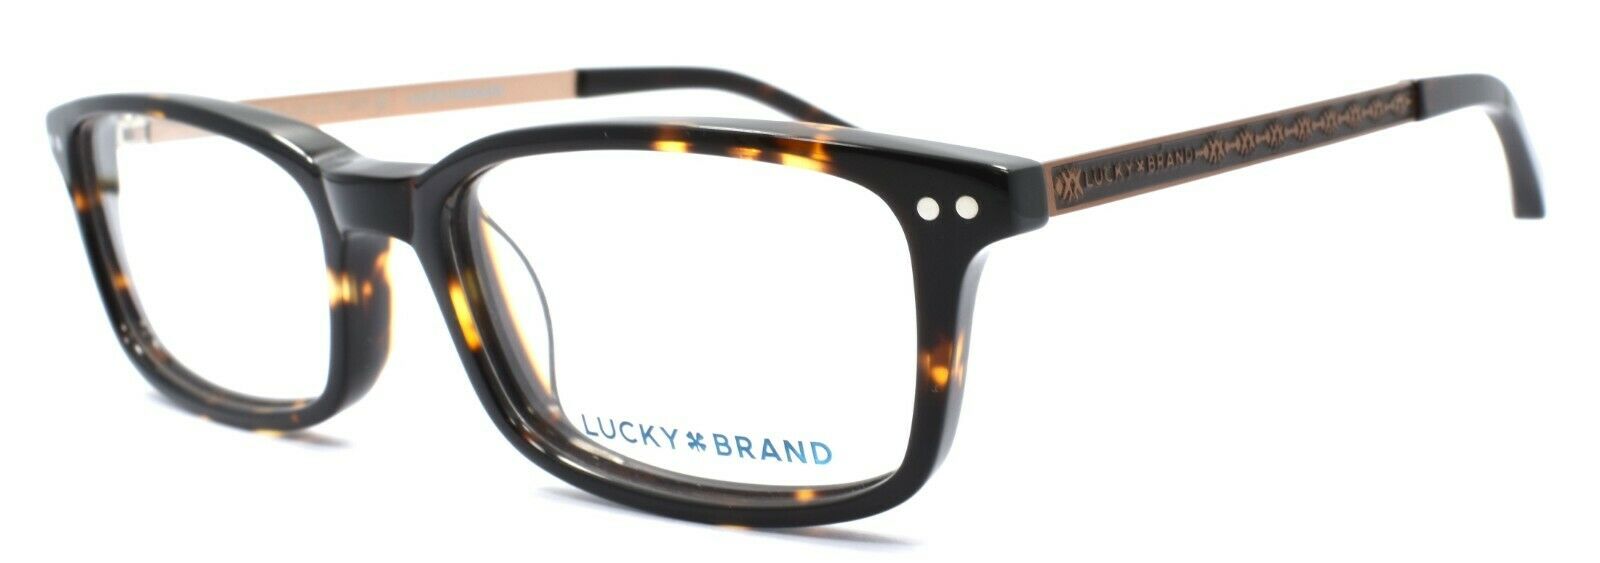 1-LUCKY BRAND D800 Kids Unisex Eyeglasses Frames 46-15-130 Tortoise + CASE-751286282320-IKSpecs